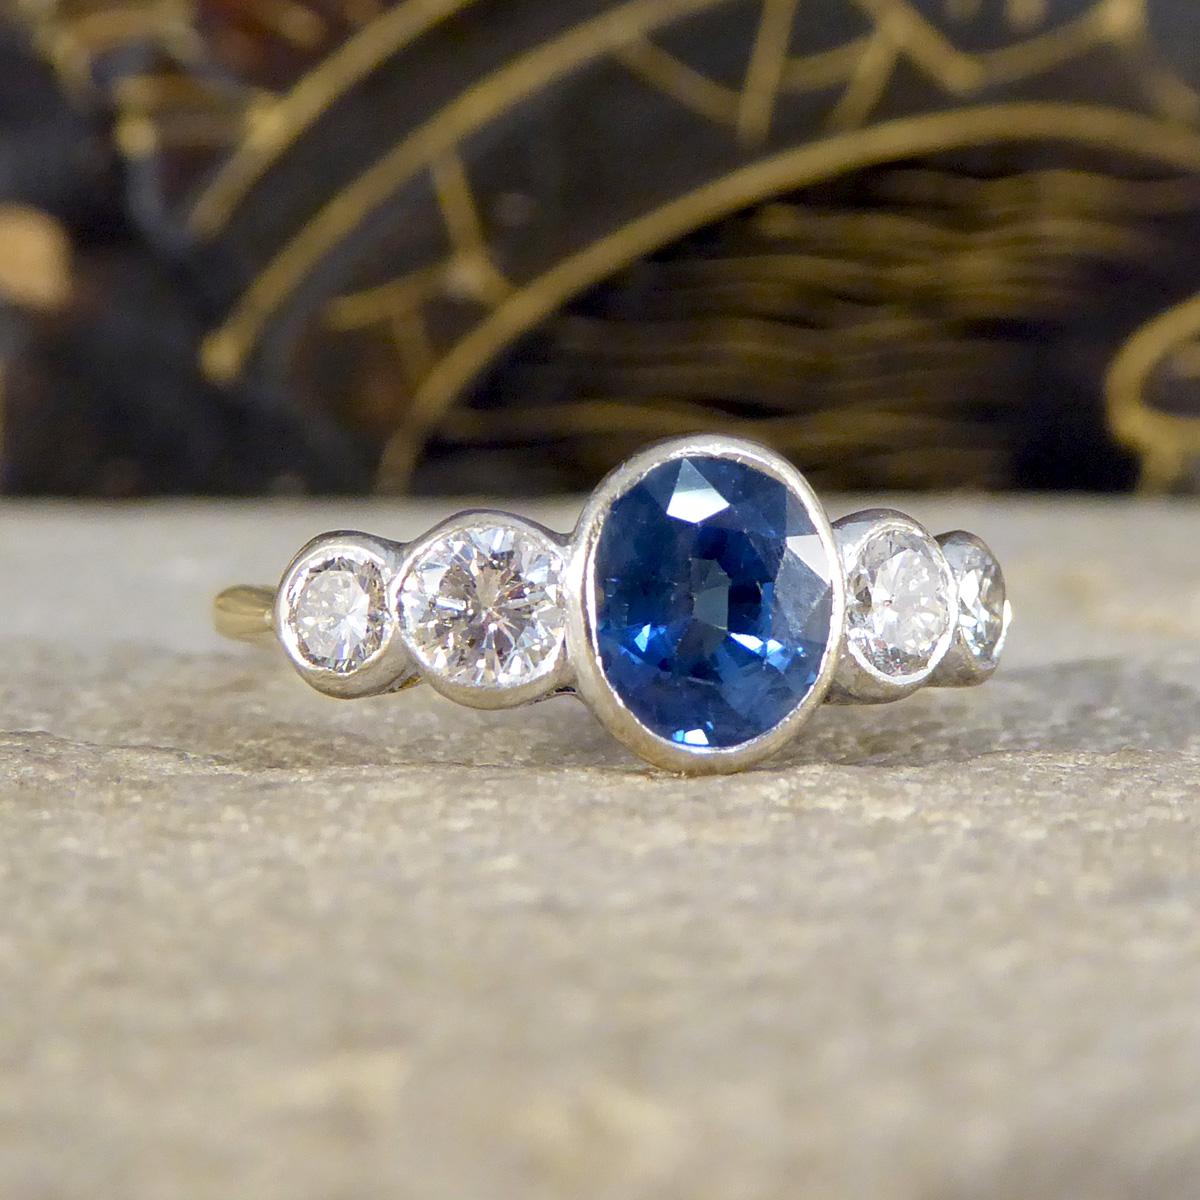 Dieser edwardianische Ring aus Saphir und Diamant mit fünf Steinen in der Lünette ist ein Zeugnis der Eleganz des frühen 20. Jahrhunderts. Er ist aus 18 Karat Weiß- und Gelbgold gefertigt und zeichnet sich durch eine harmonische Mischung aus einem